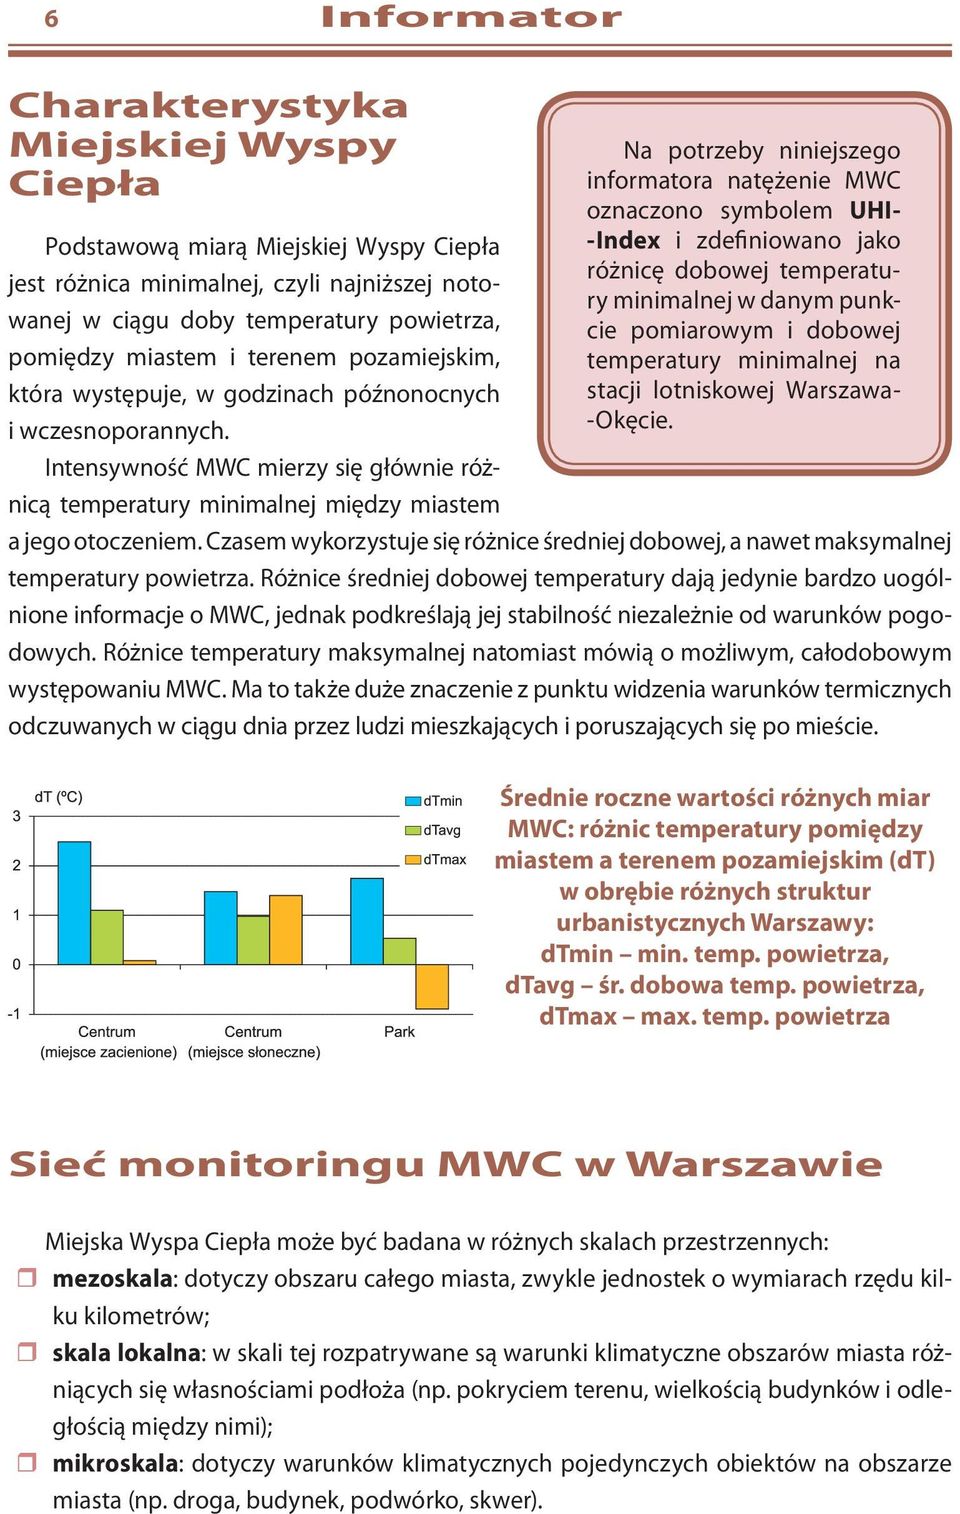 Intensywność MWC mierzy się głównie różnicą temperatury minimalnej między miastem Na potrzeby niniejszego informatora natężenie MWC oznaczono symbolem UHI- -Index i zdefiniowano jako różnicę dobowej